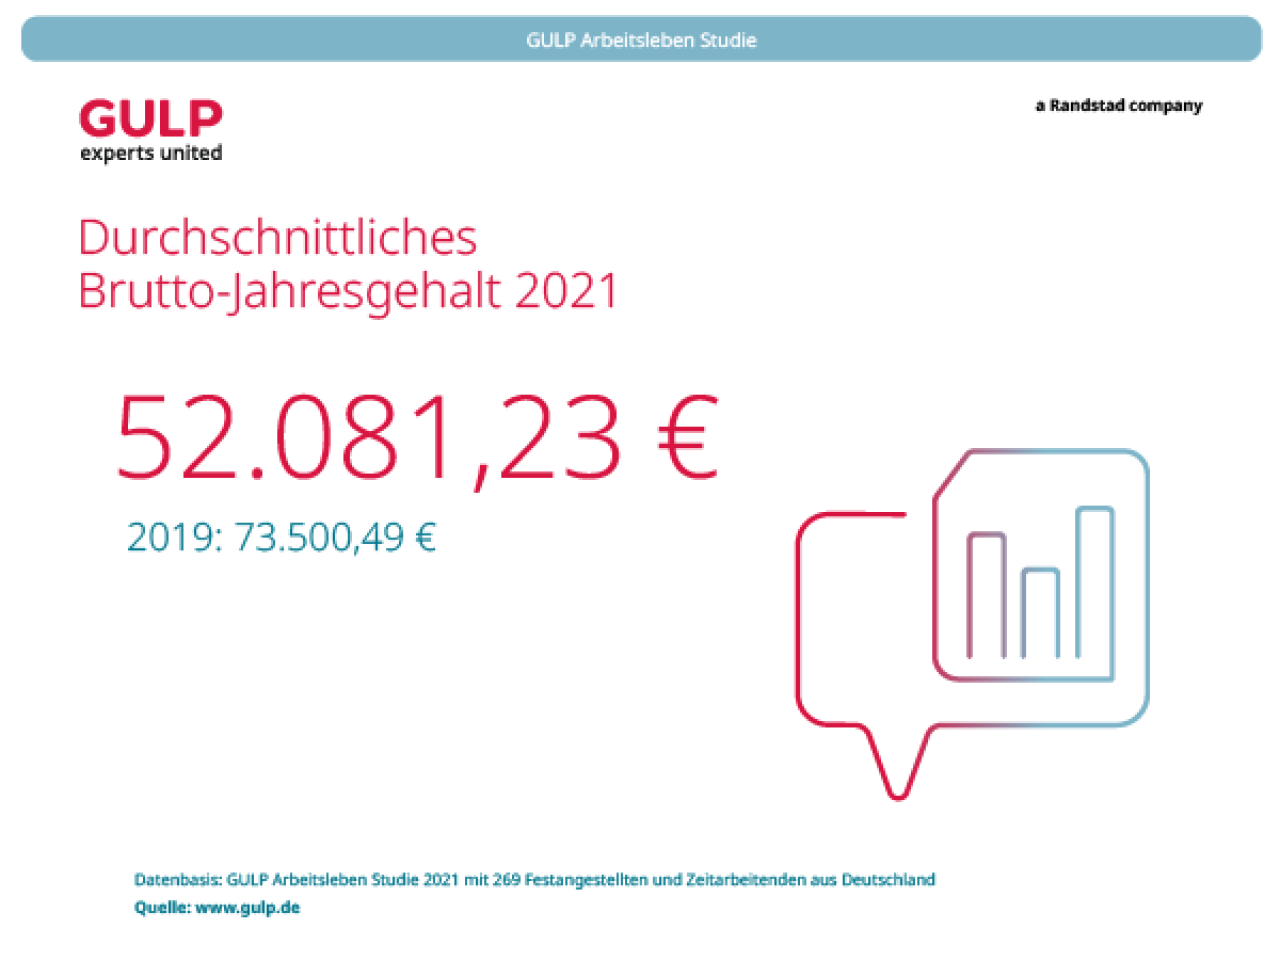 Das durschnittliche Brutto-Jahresgehalt liegt in Deutschland derzeit bei 52.081,23 Euro